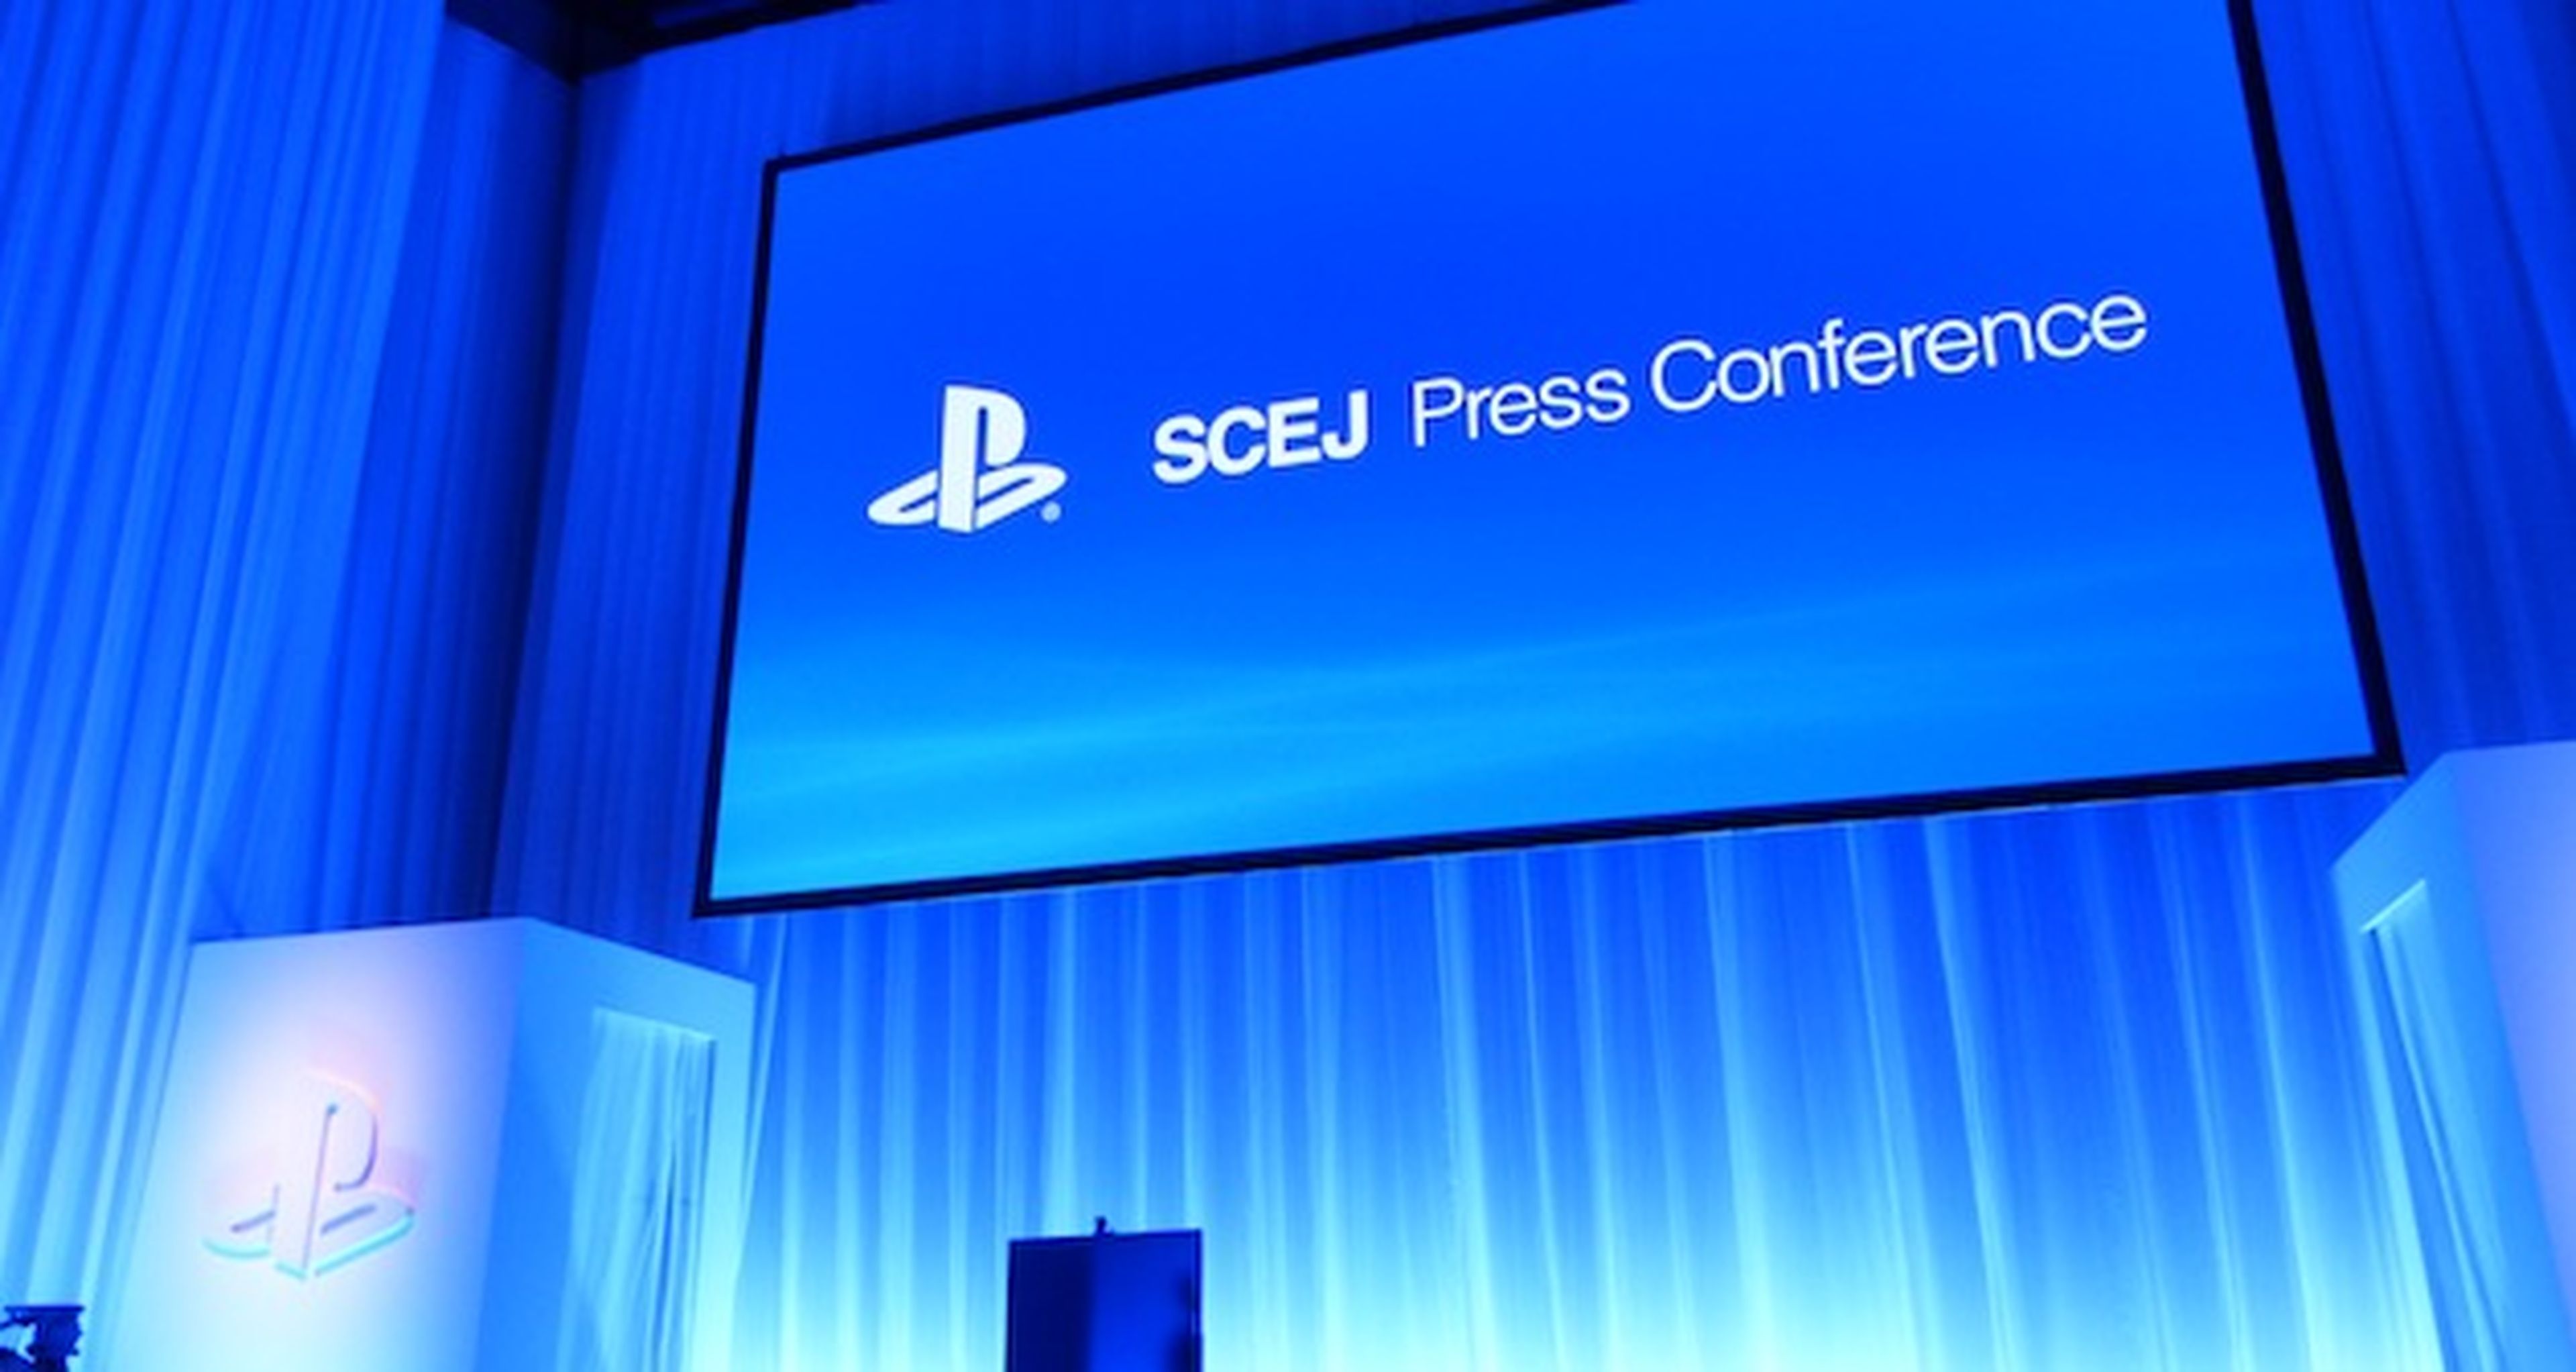 TGS 2012: Impresiones de la conferencia de Sony